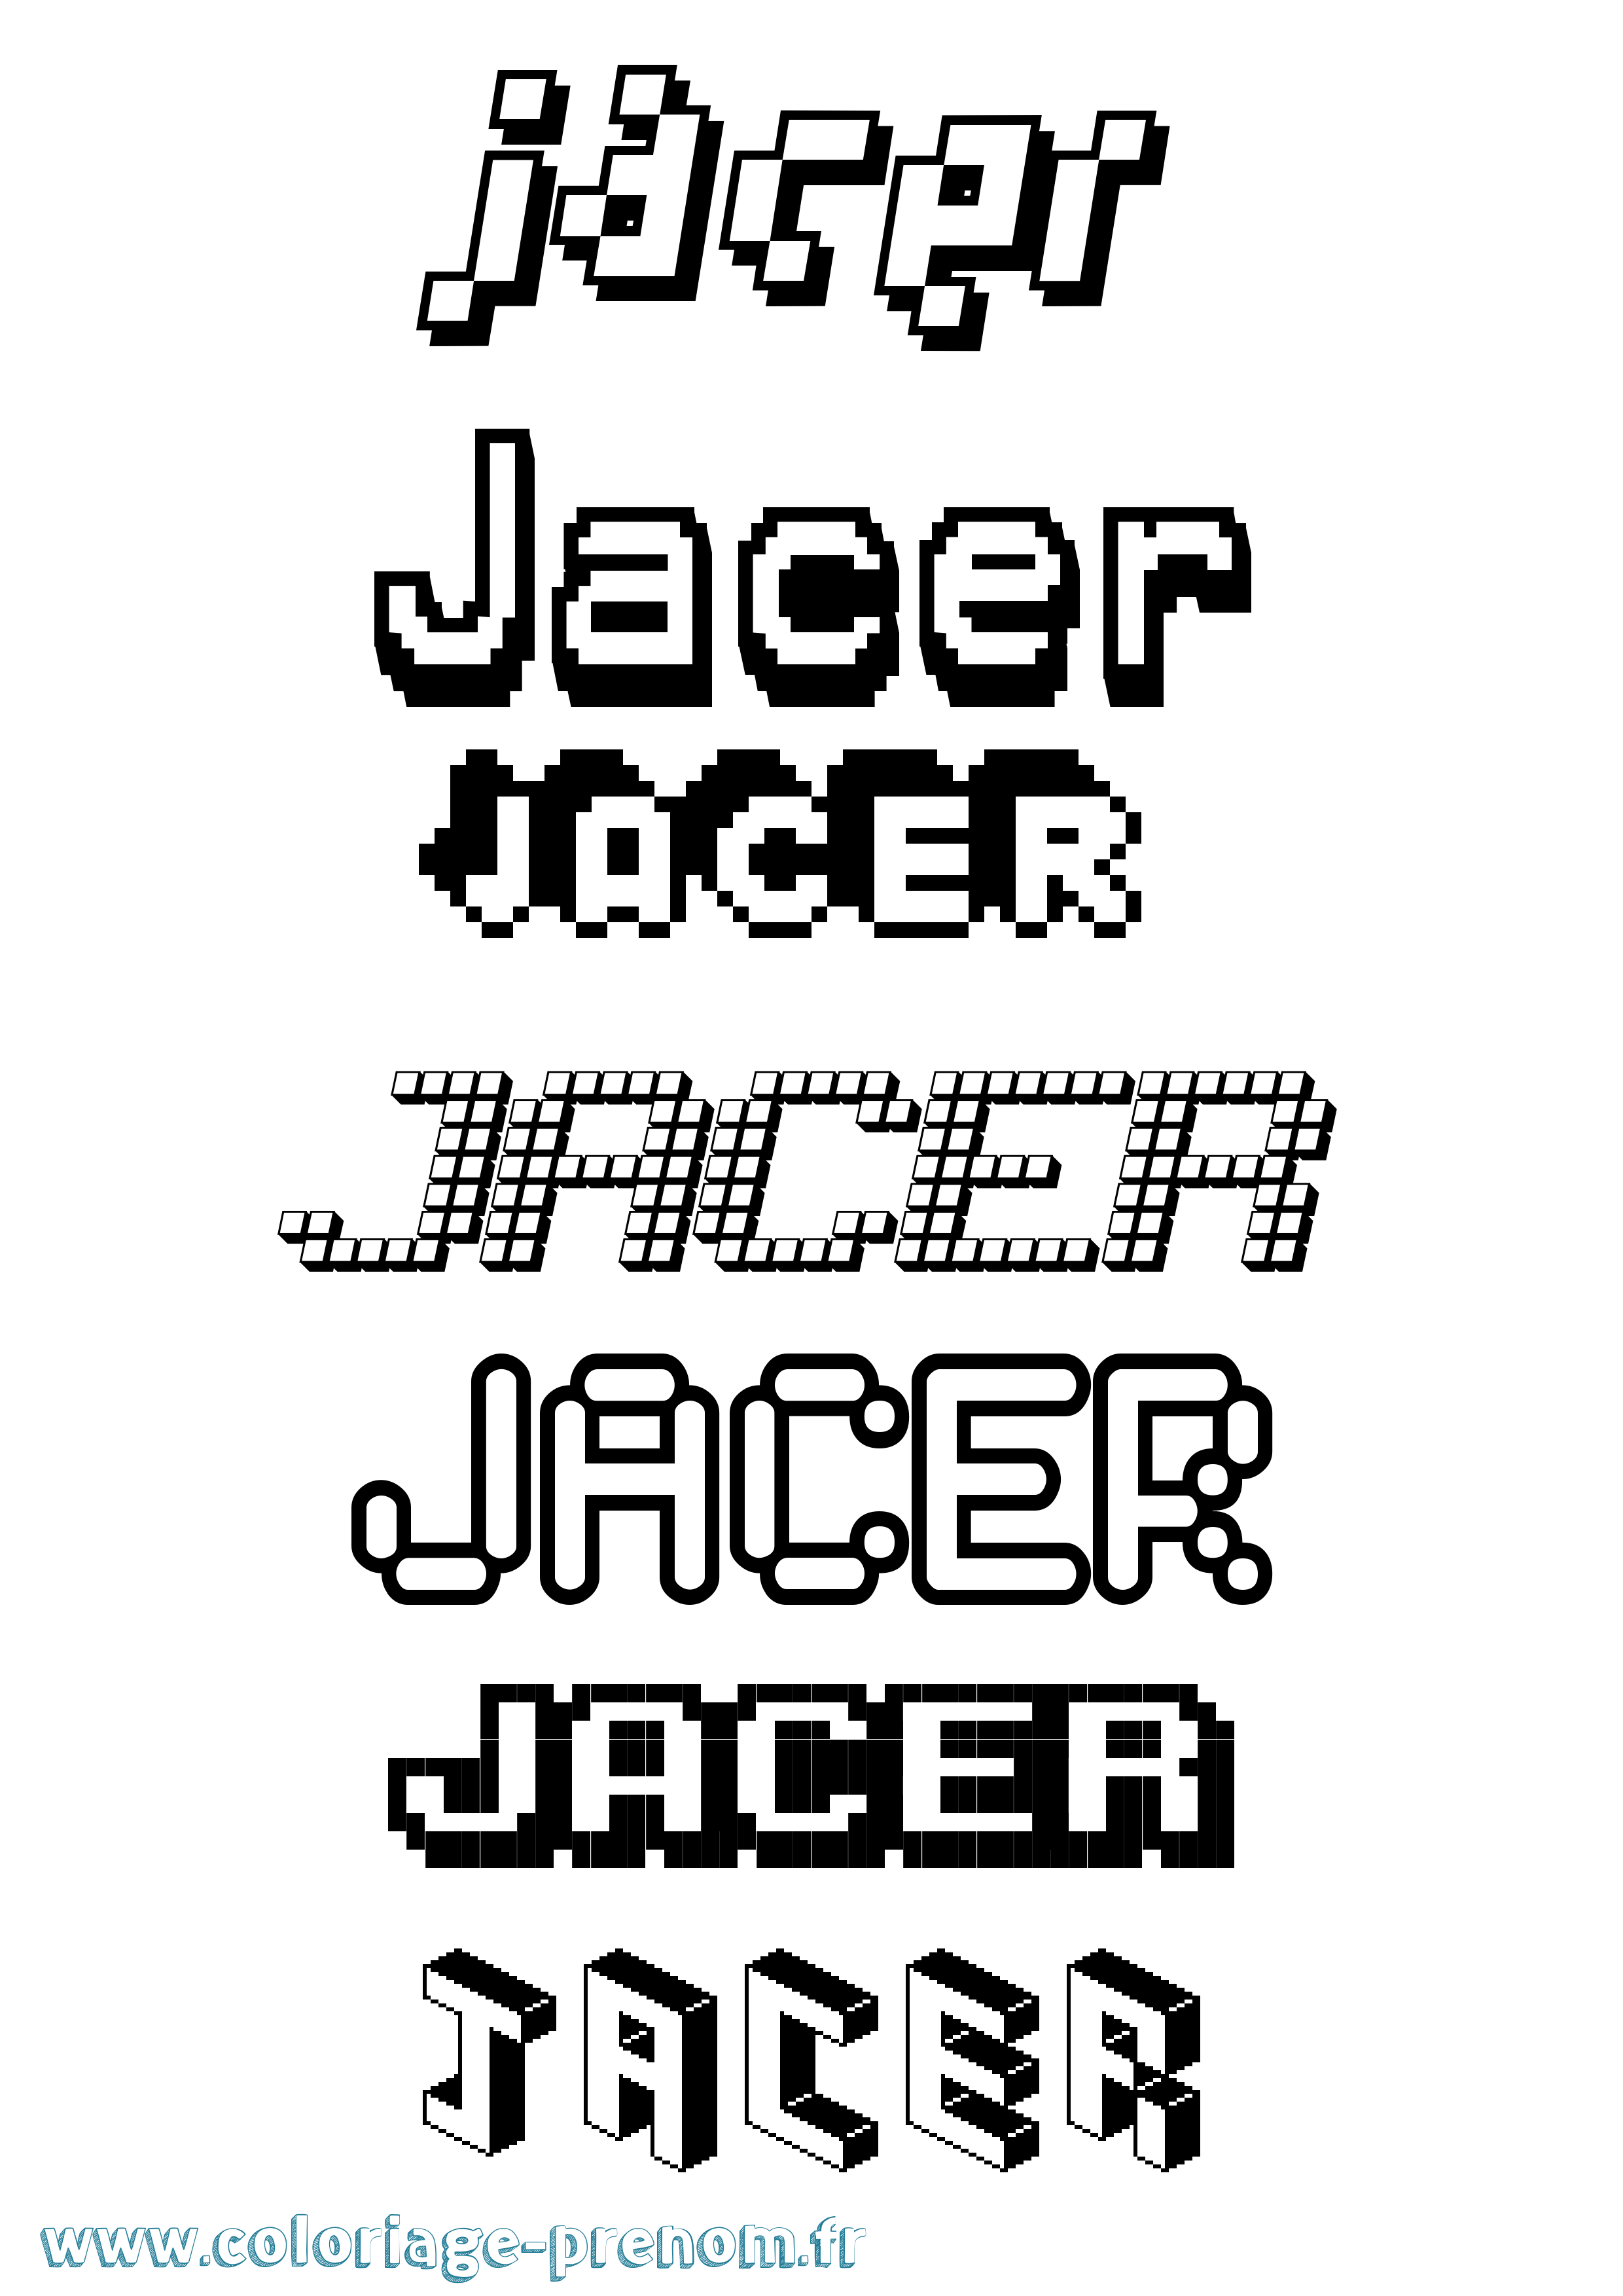 Coloriage prénom Jacer Pixel